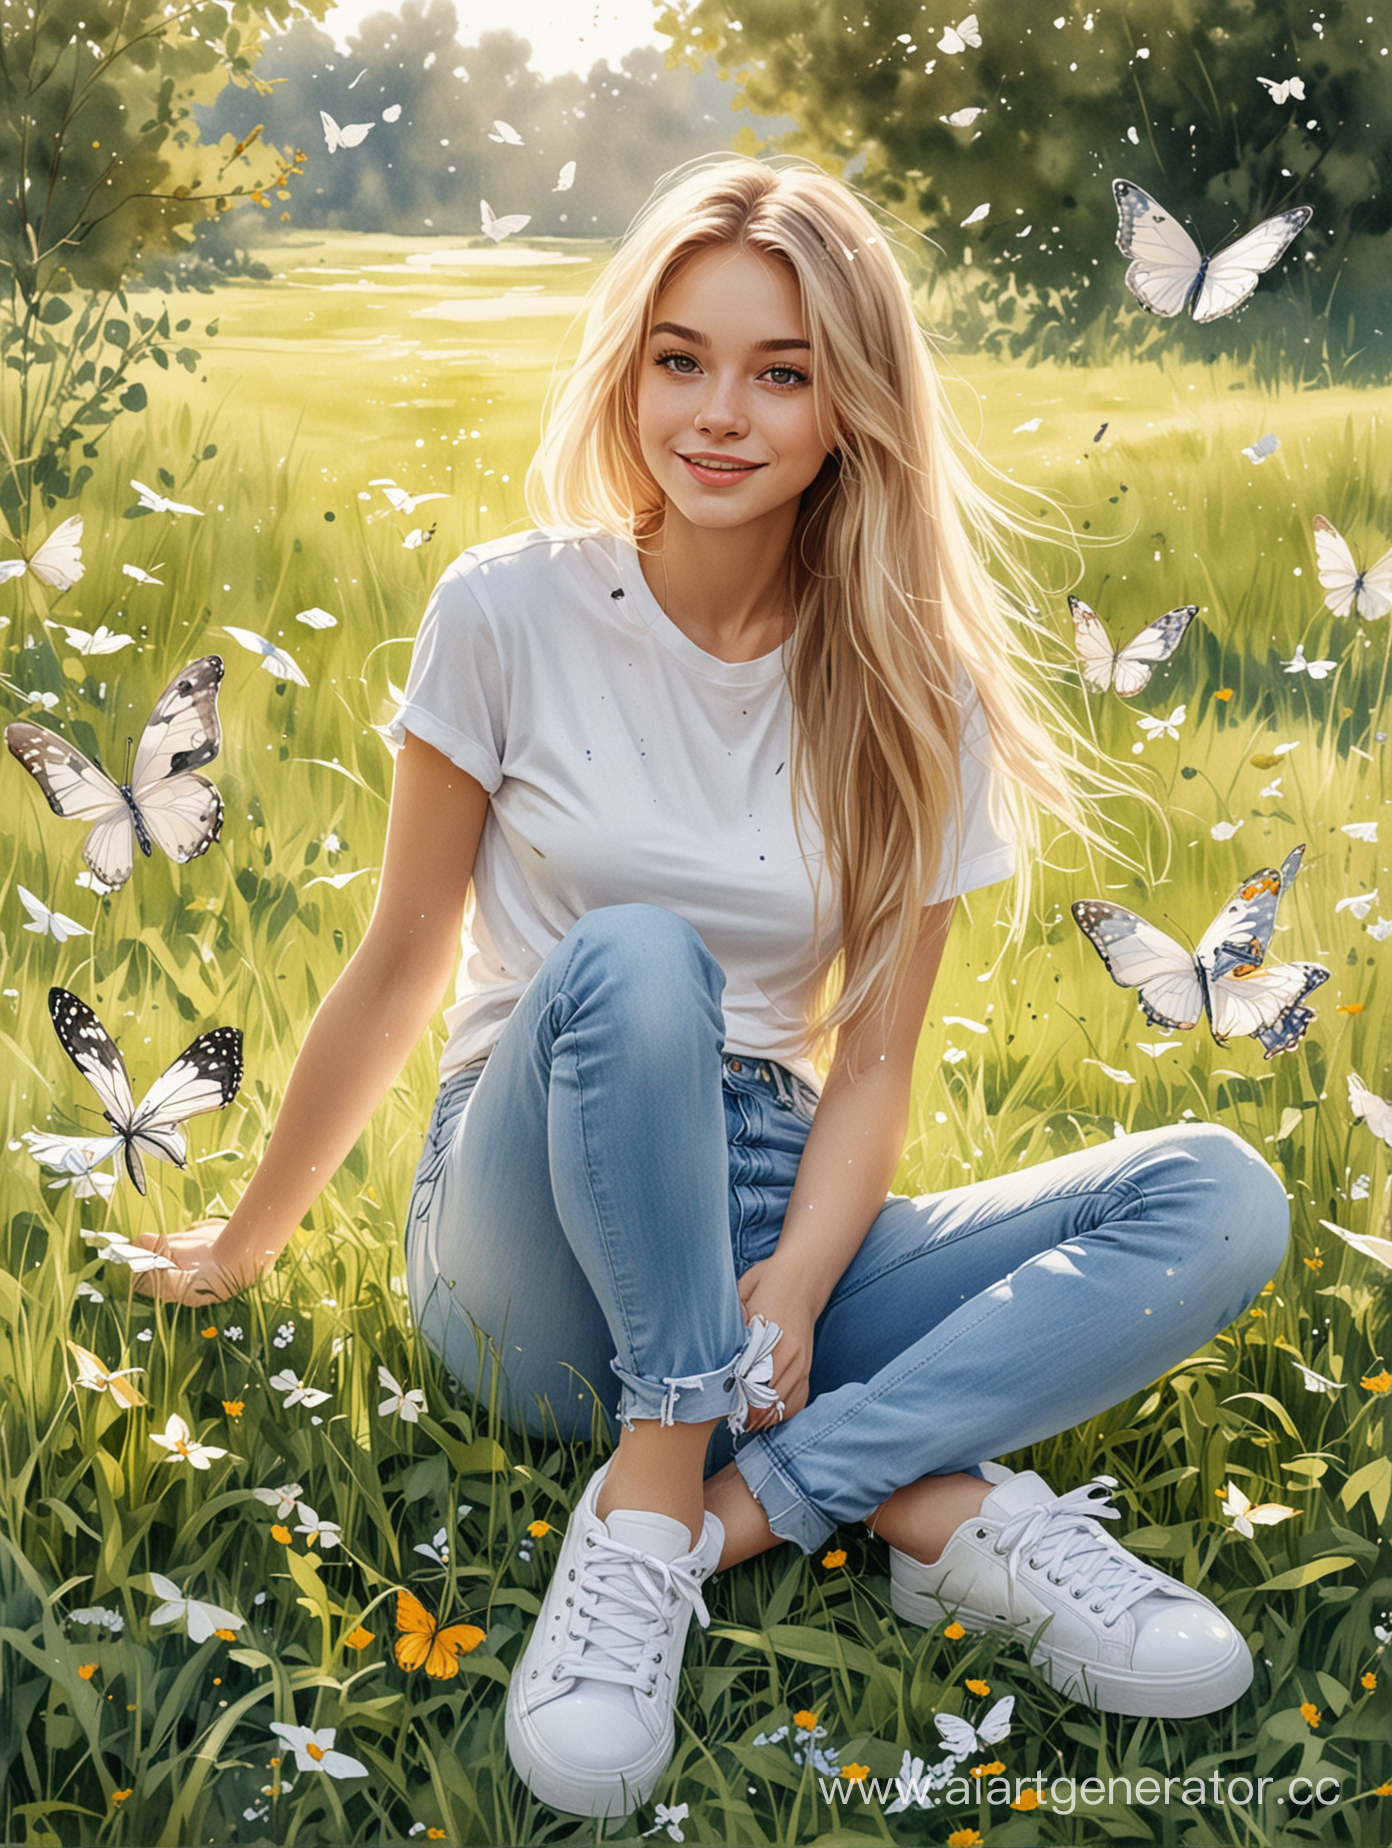 девушка светлые волосы длинные,белая футболка, джинсы, белые кеды, сидит в траве , летают бабочки, стиль шарж акварель